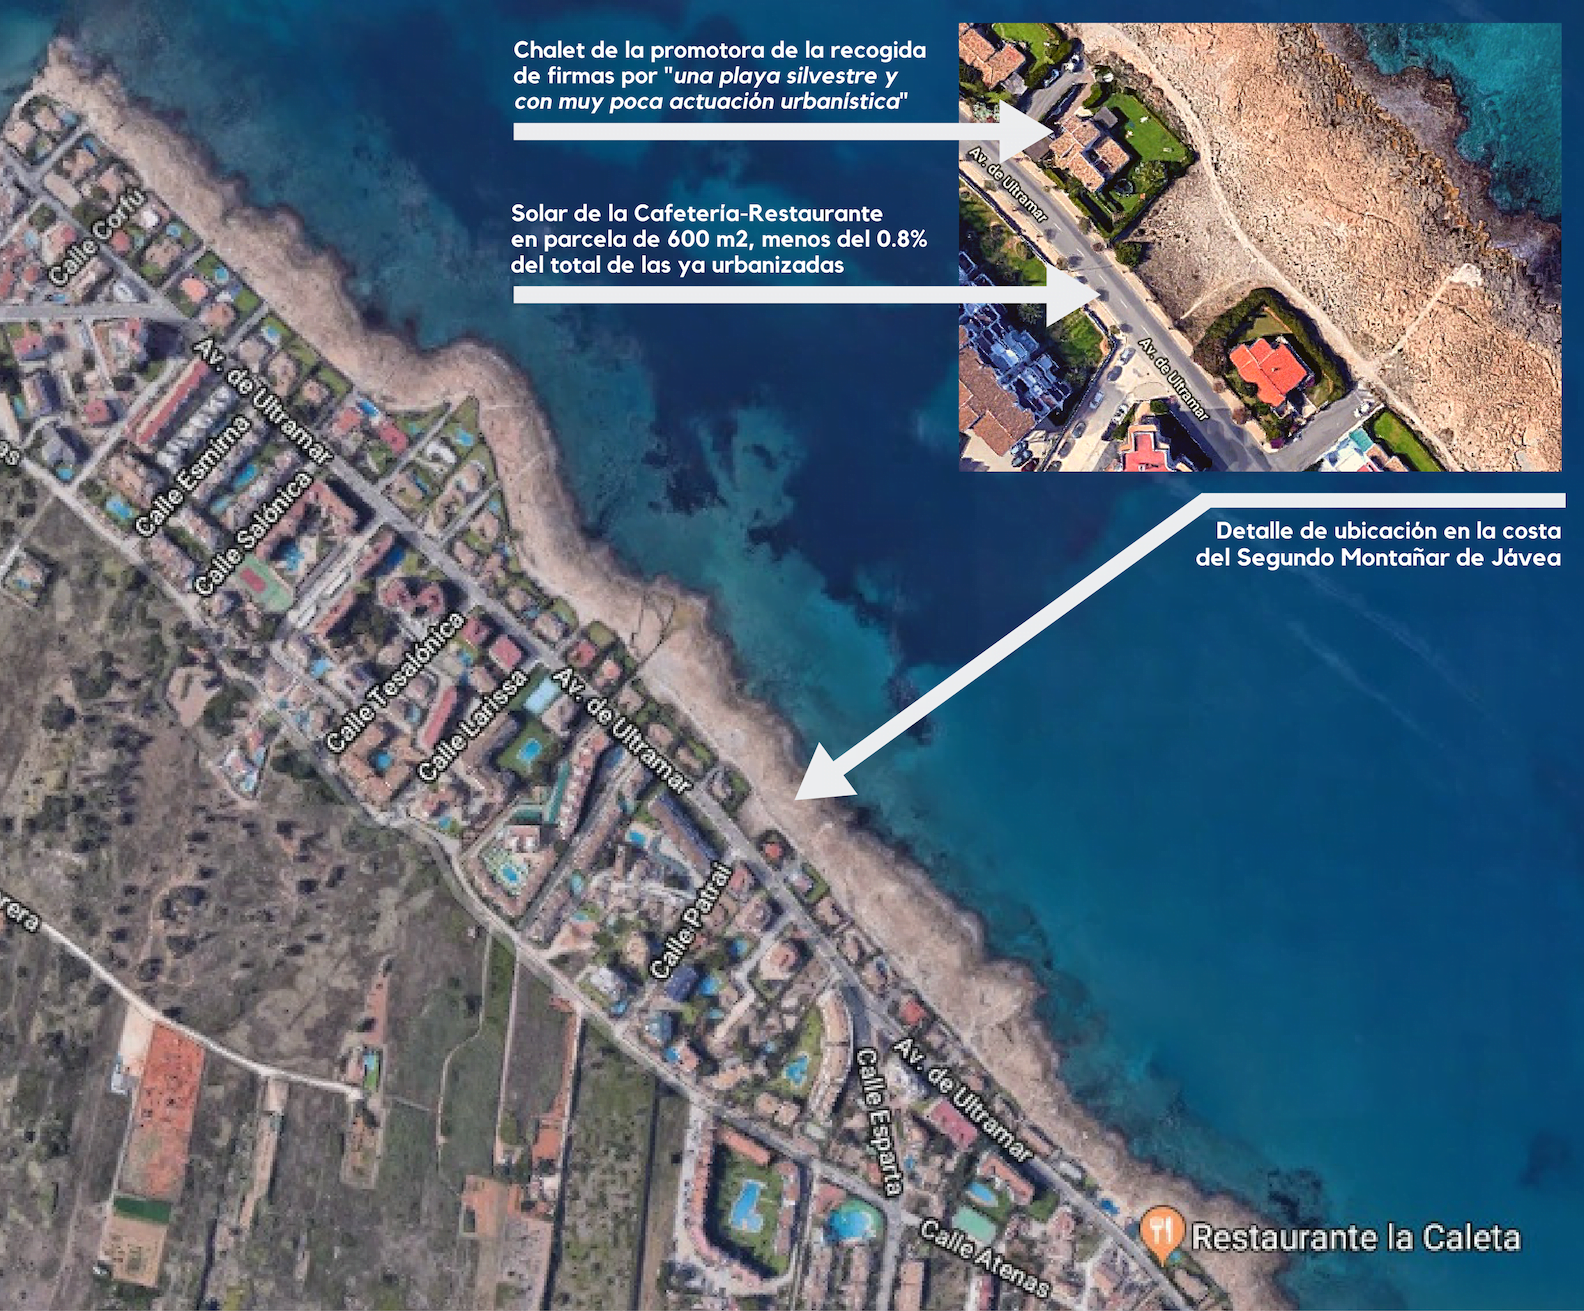 El litoral urbanizado del Segundo Montañar de Jávea, en una imagen aérea completa